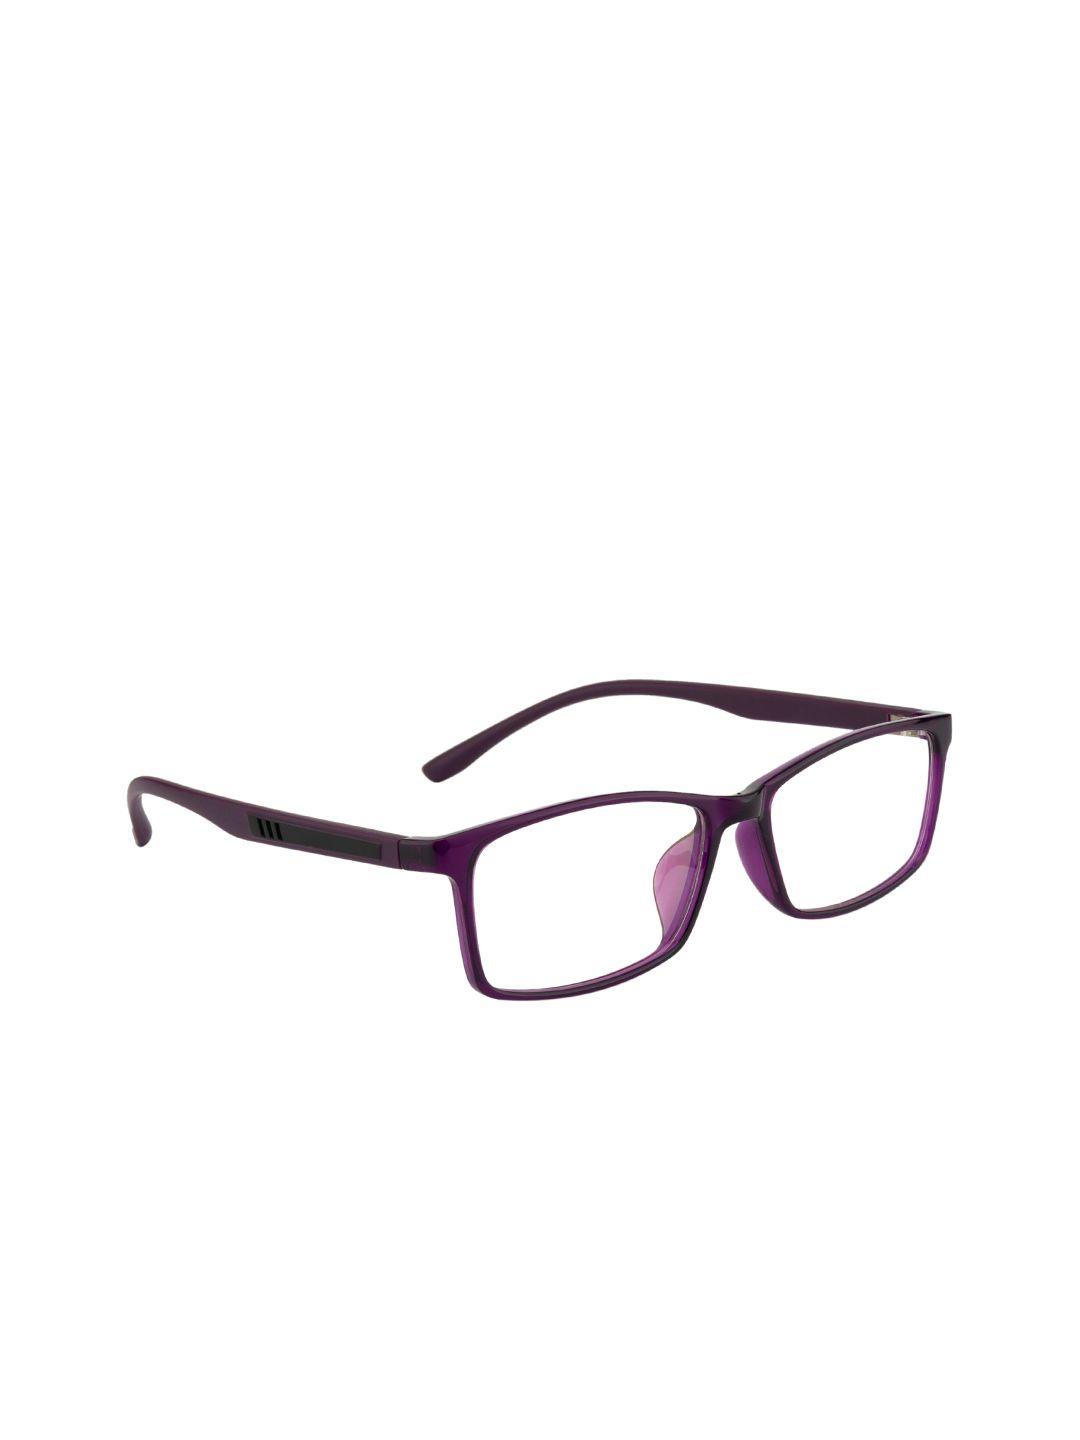 ted smith unisex purple full rim rectangle frames eyeglasses